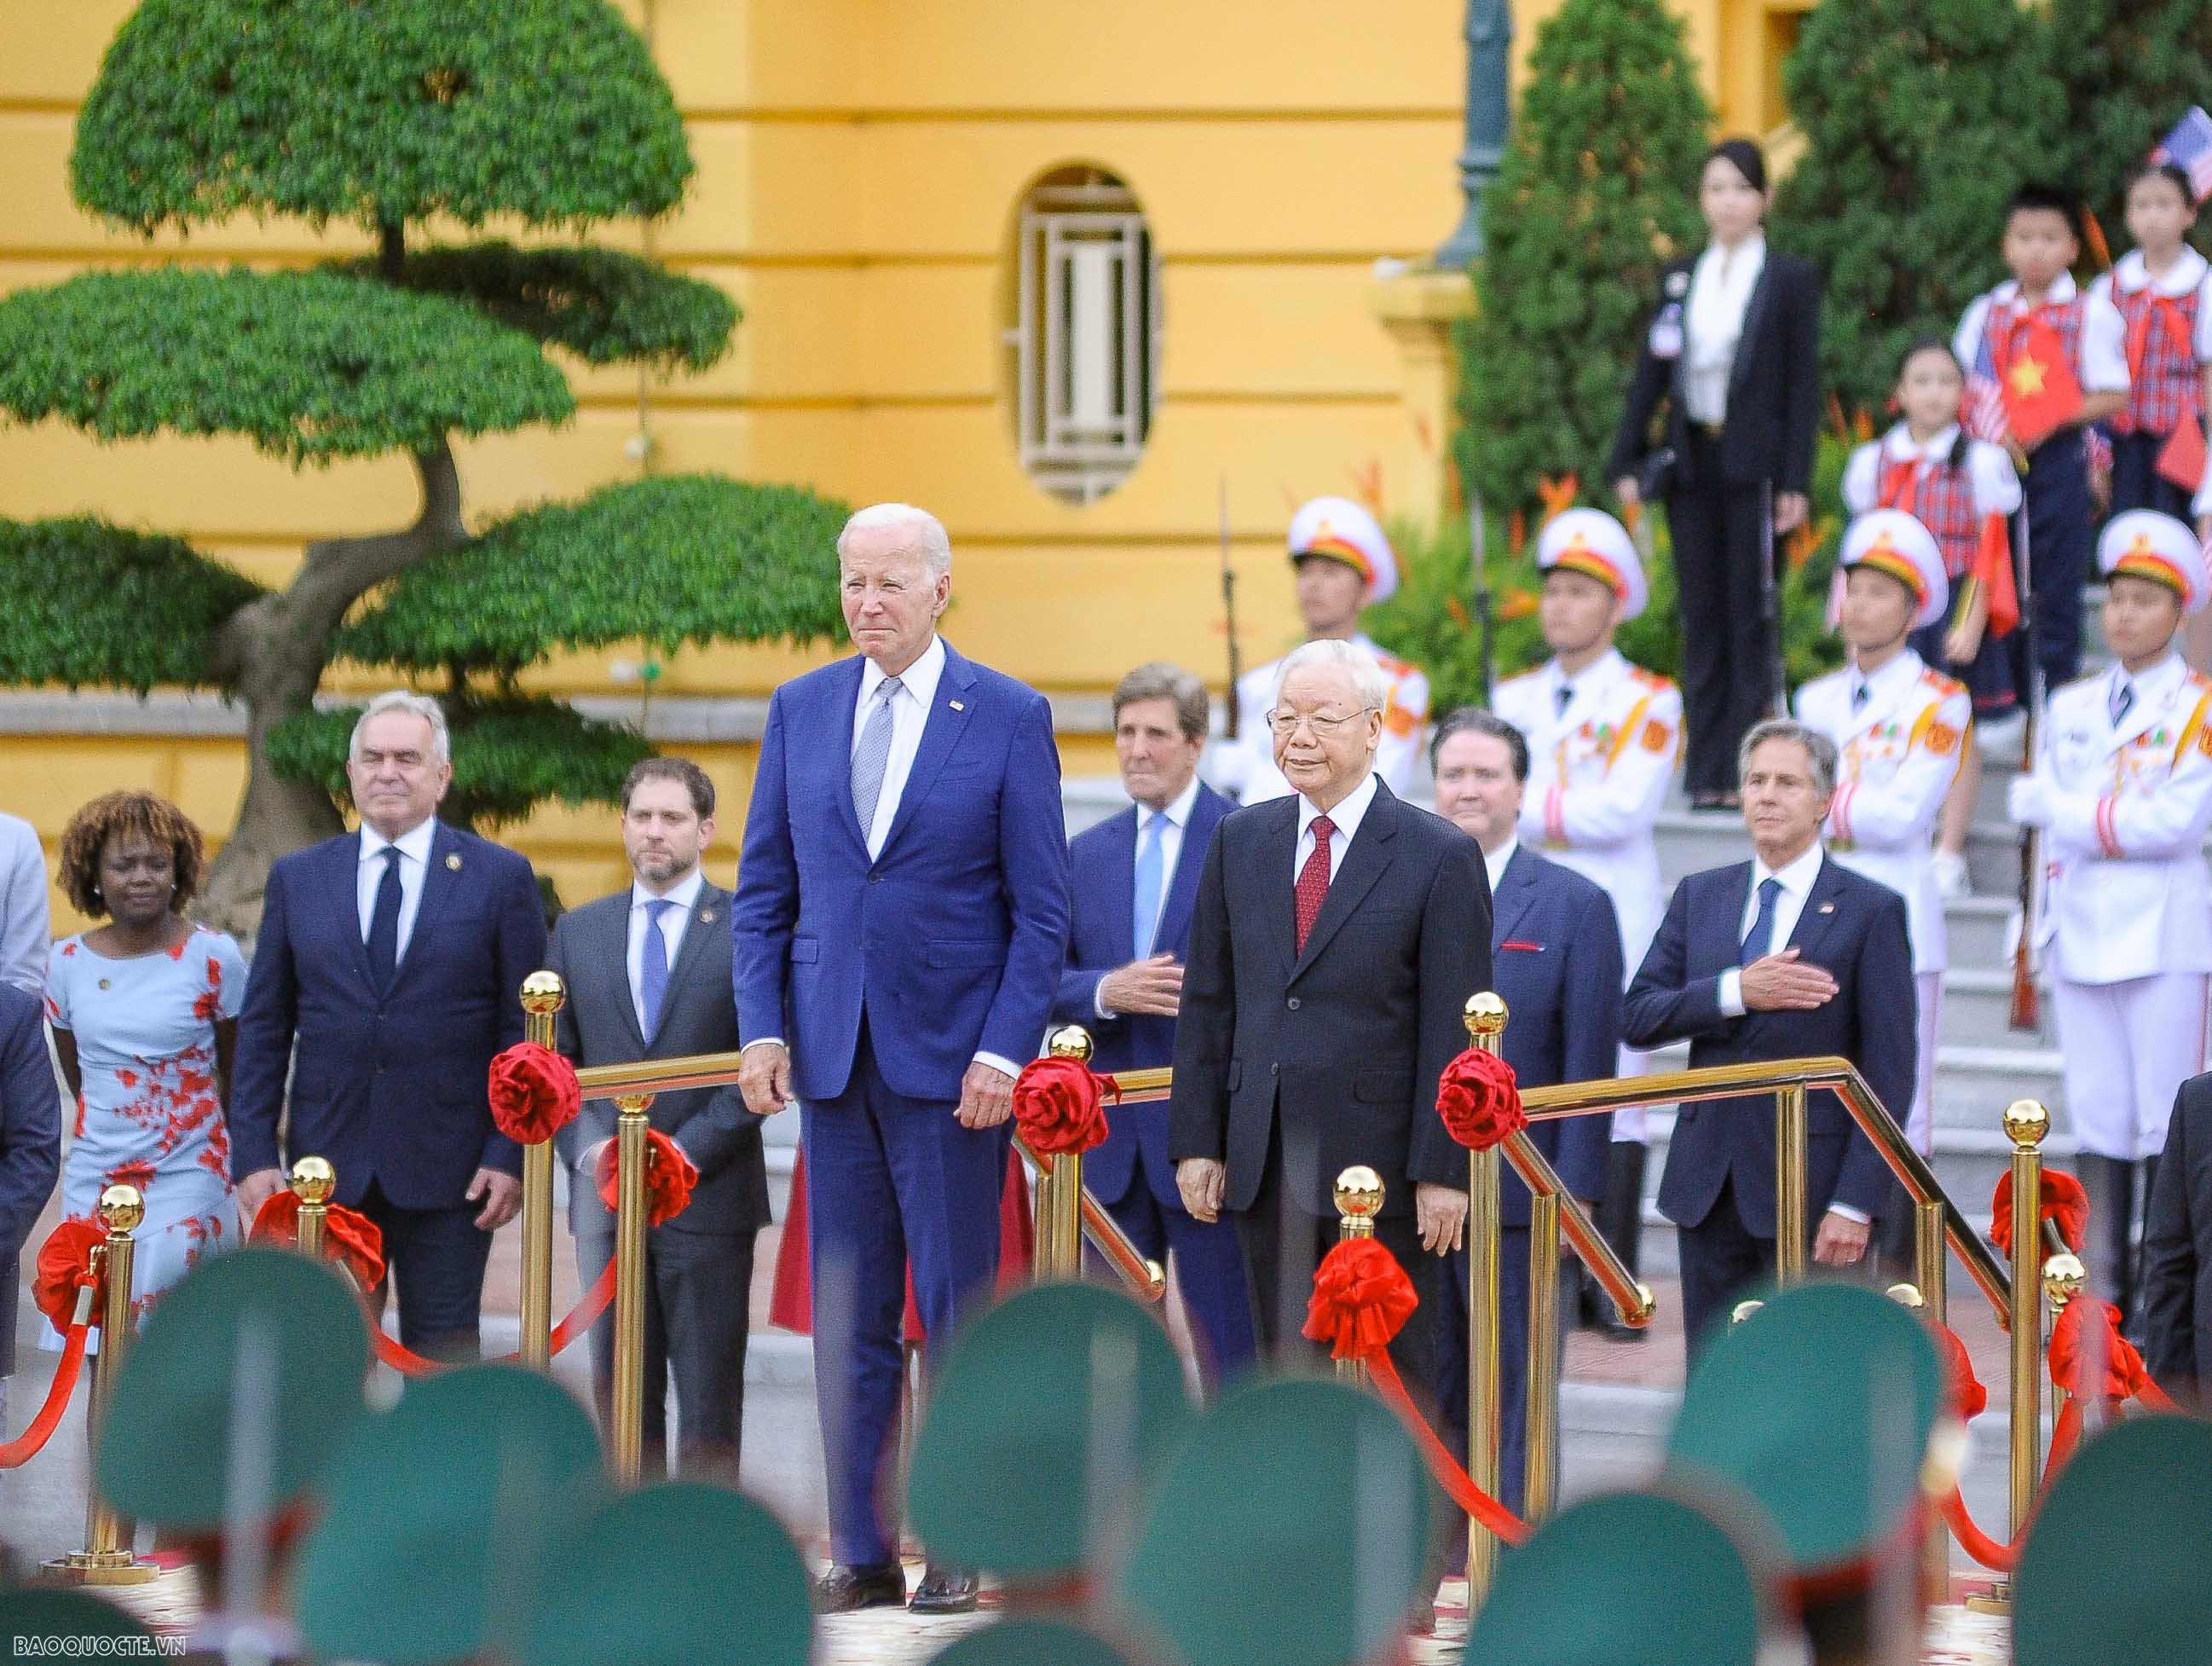 US President Joe Biden’s Vietnam visit spotlighted in media